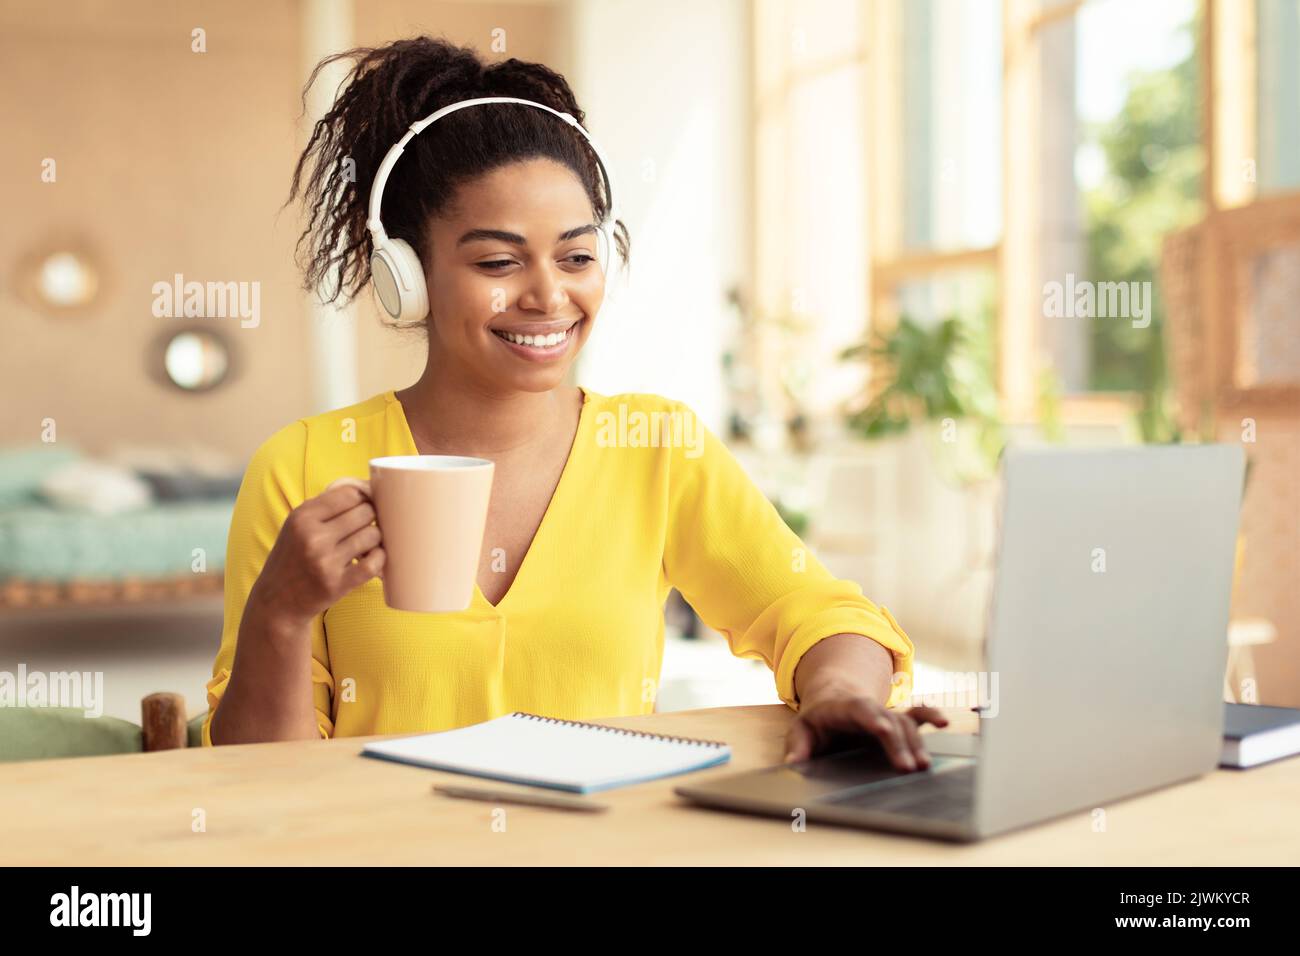 Bonne femme afro-américaine qui boit du café et qui travaille sur un ordinateur portable, qui porte un casque, qui est assise au bureau Banque D'Images